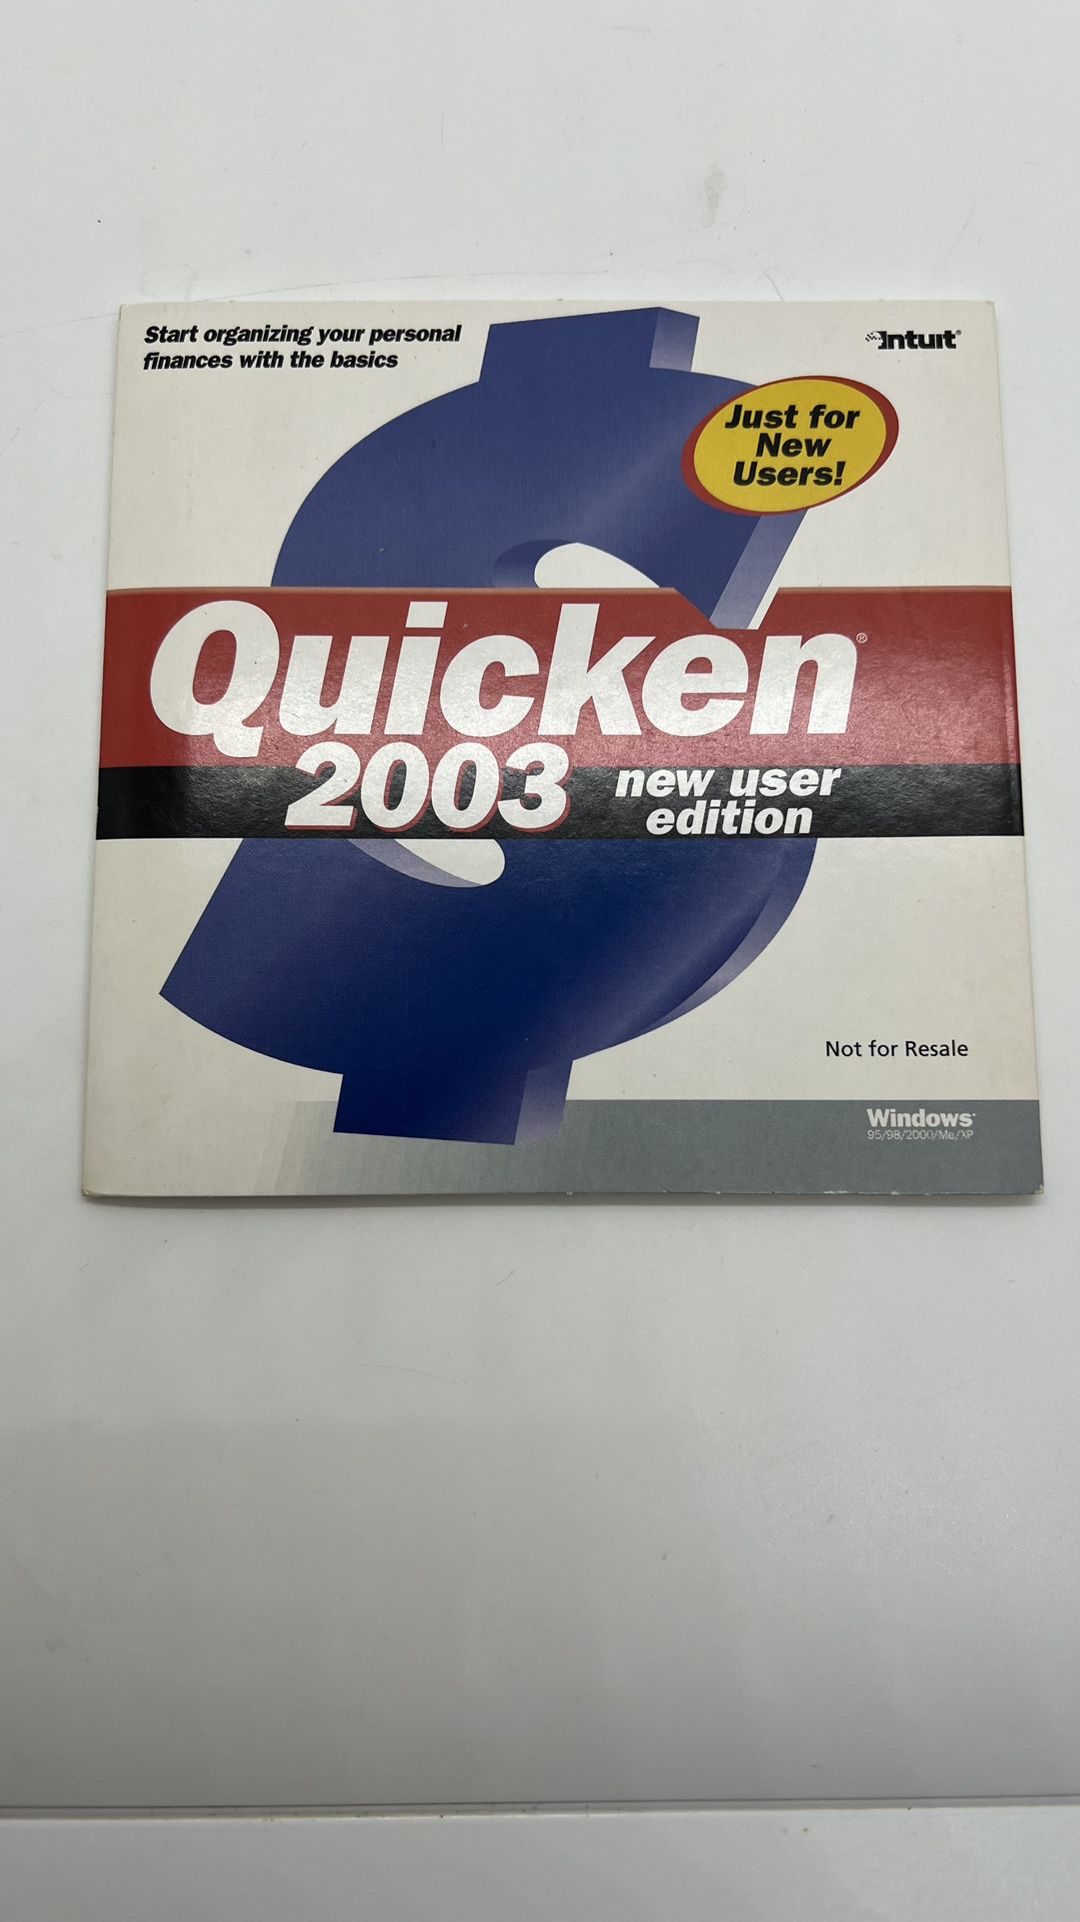 Quicken 2003 CD 